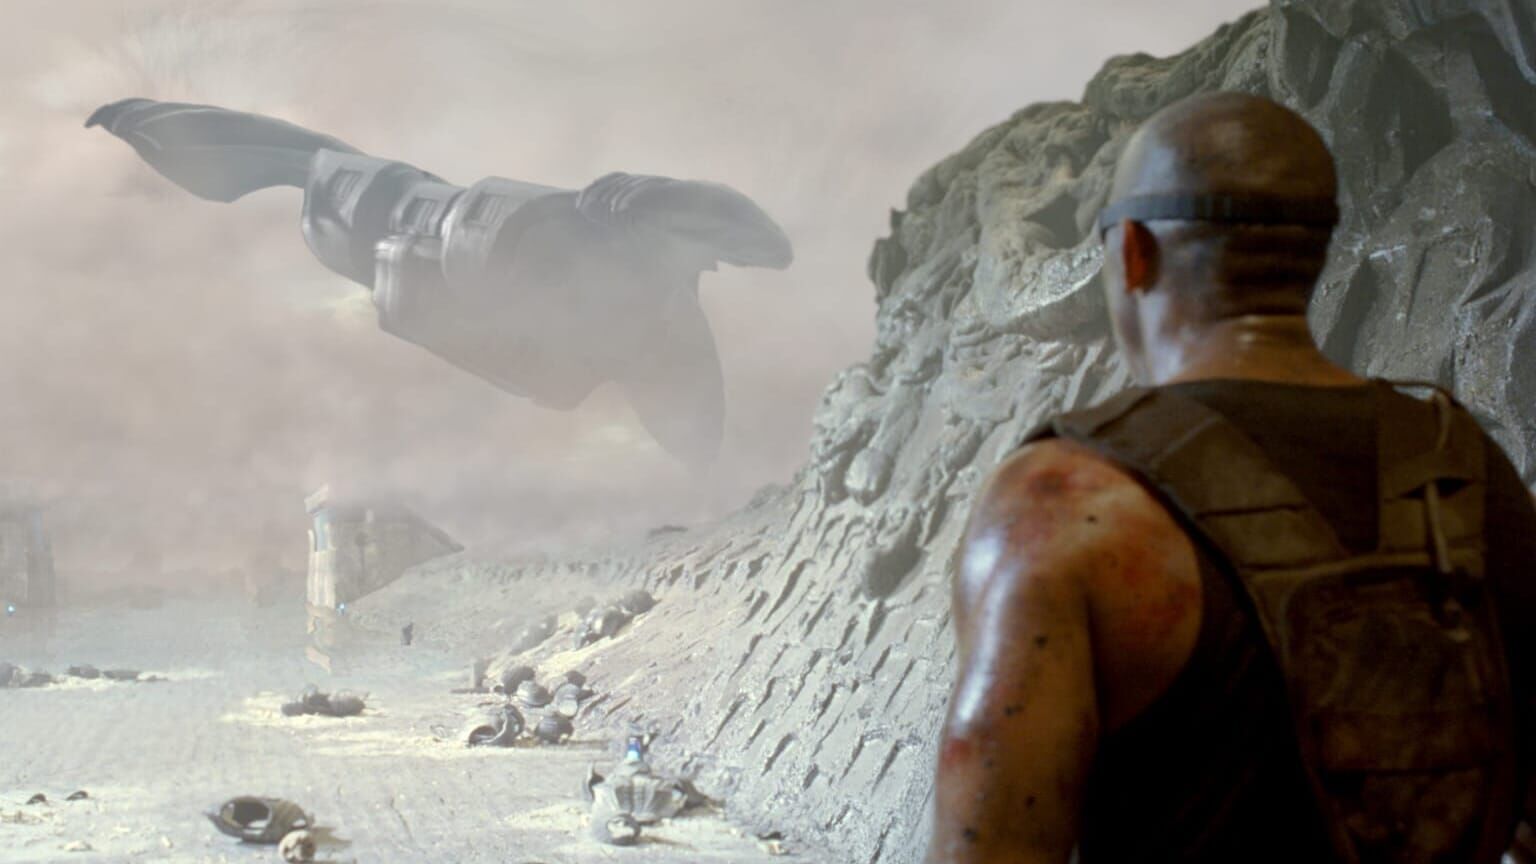 Riddick – Chroniken eines Kriegers